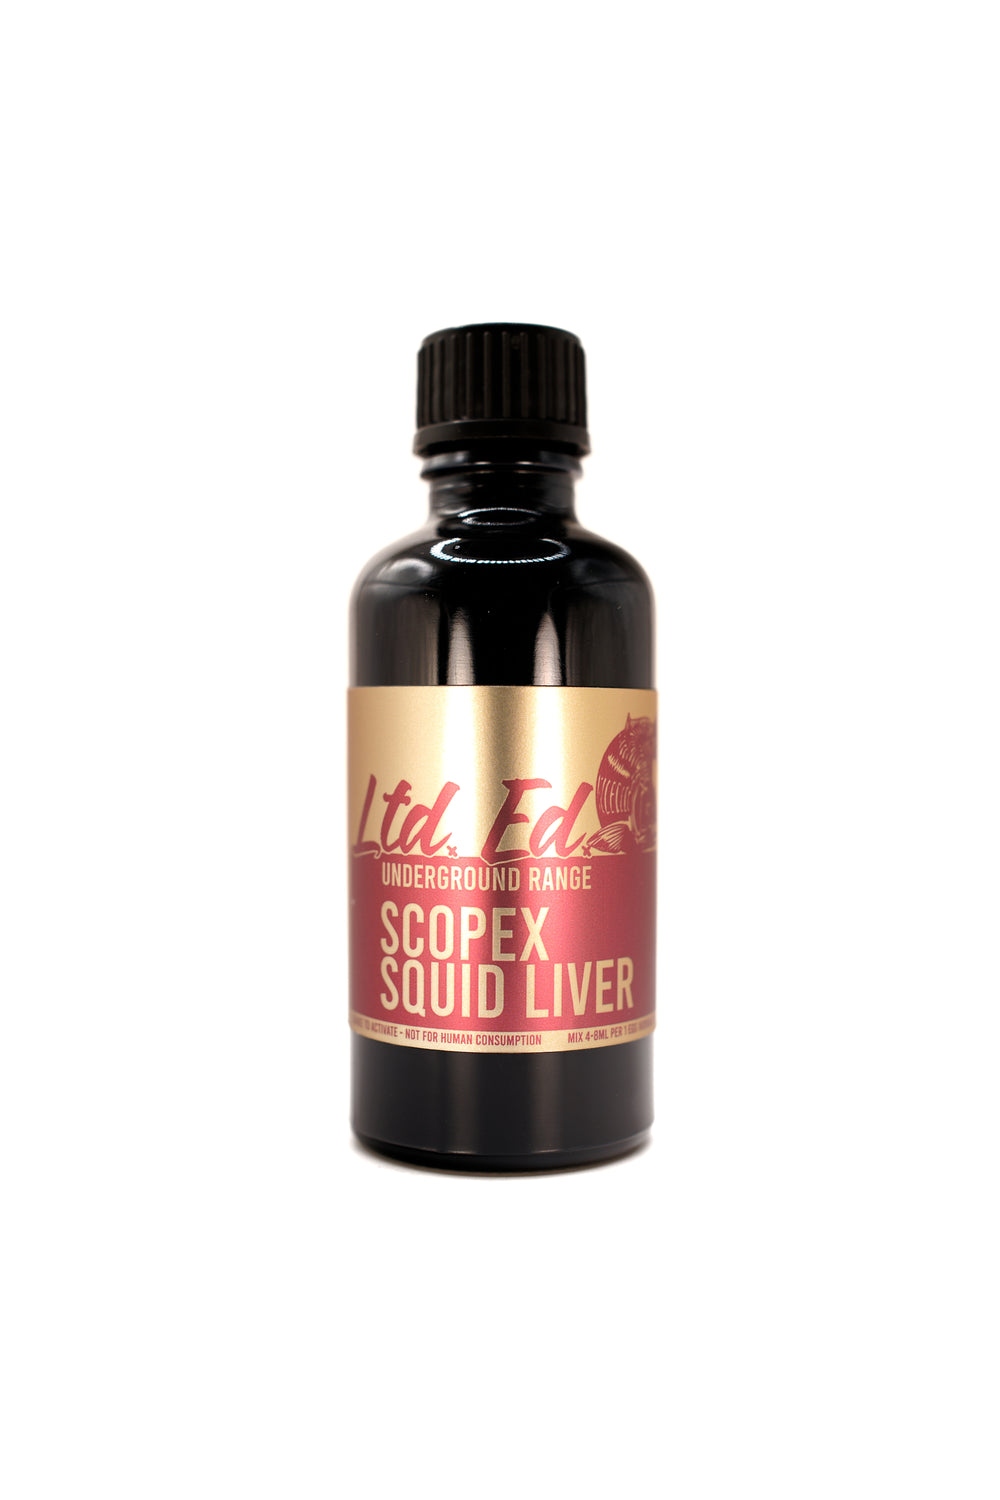 Scopex Squid Liver flavour [UNDERGROUND RANGE]